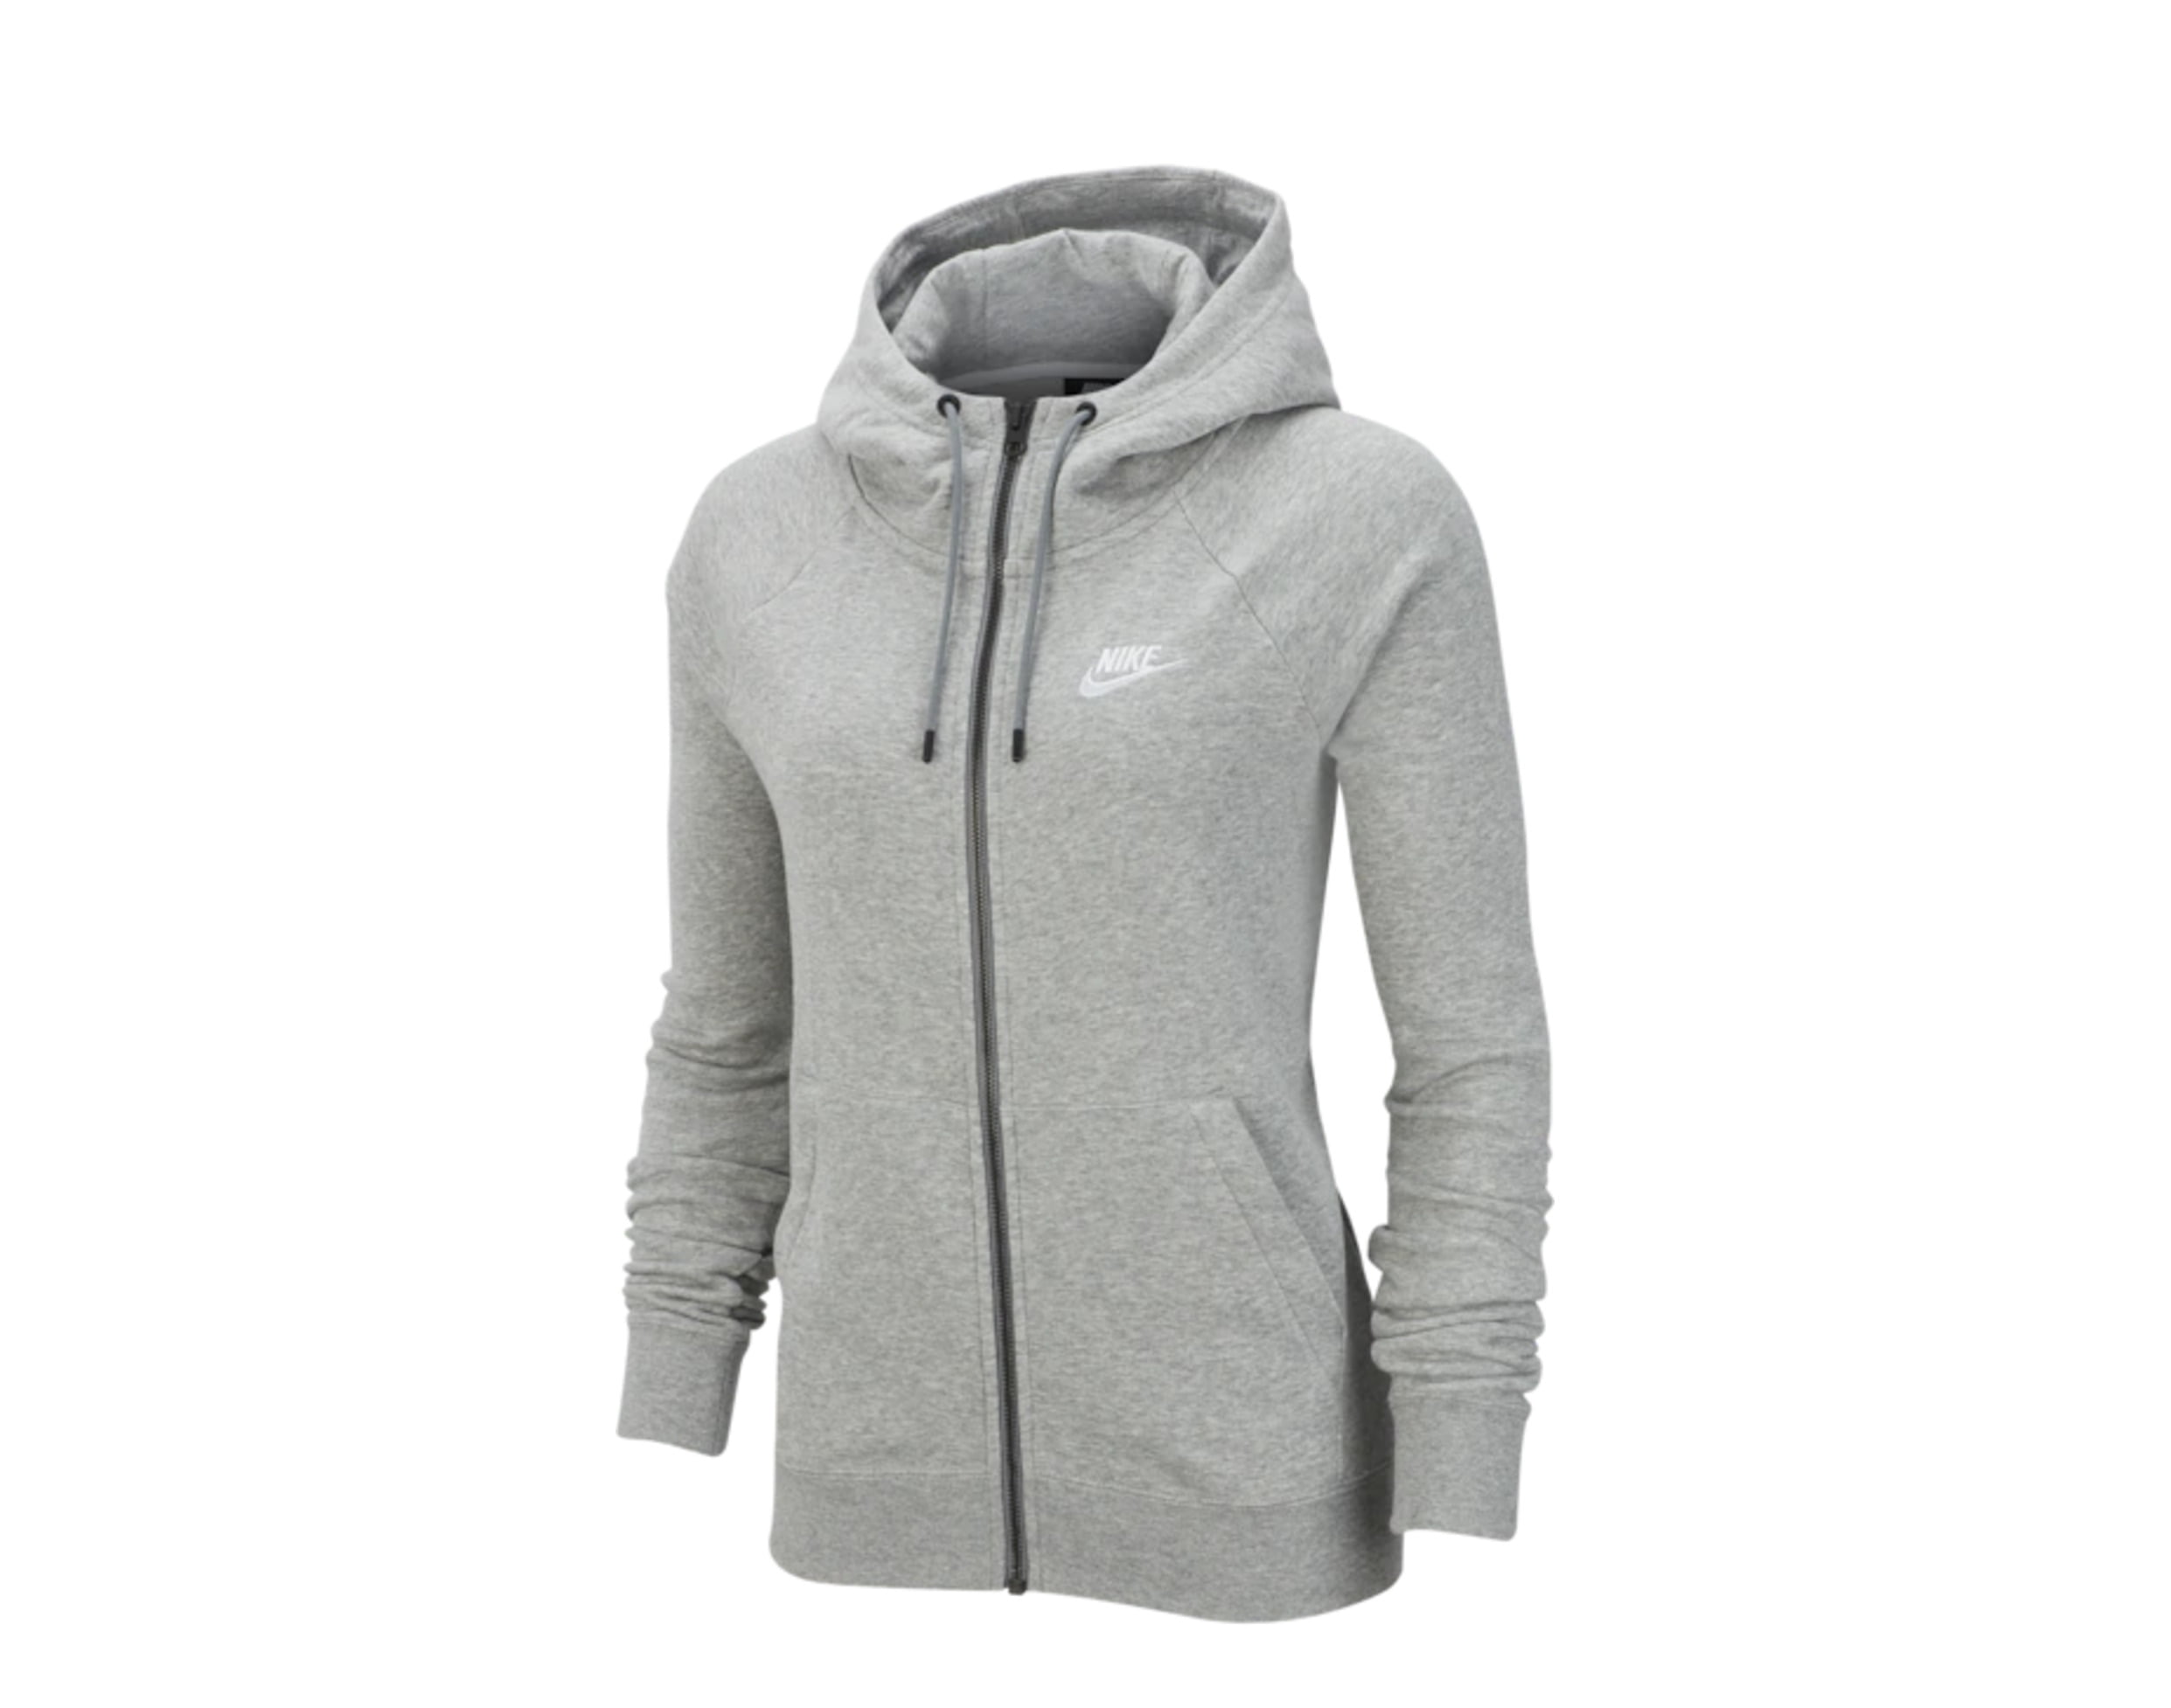 grey zip nike hoodie